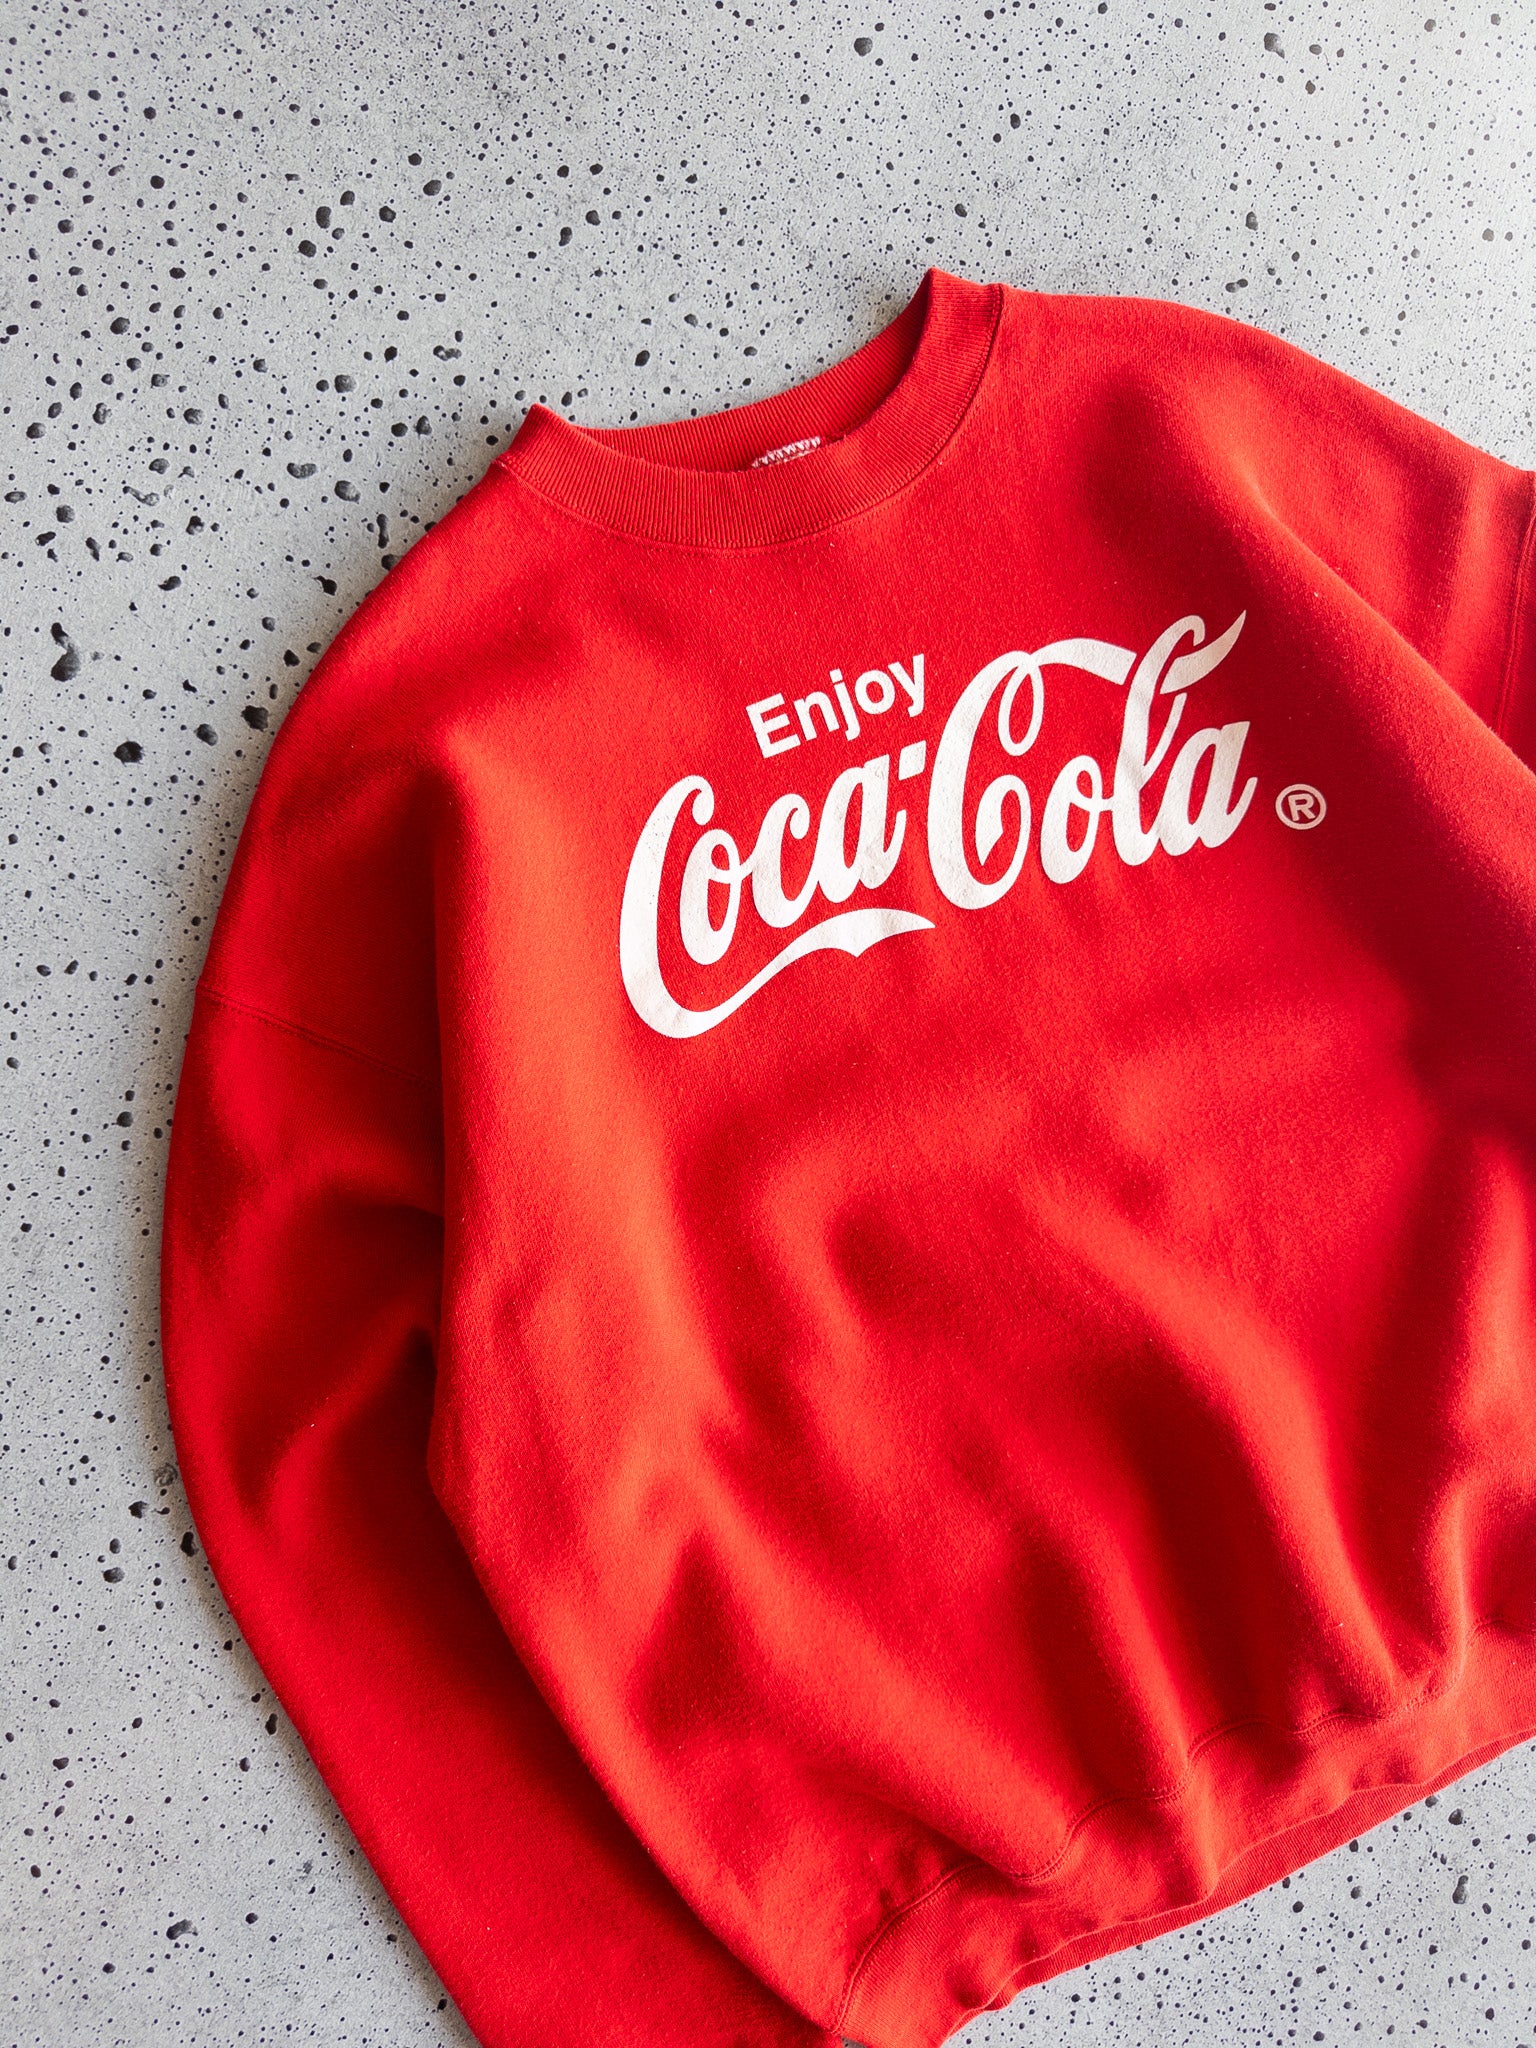 Vintage Coca-Cola Sweatshirt (XL)